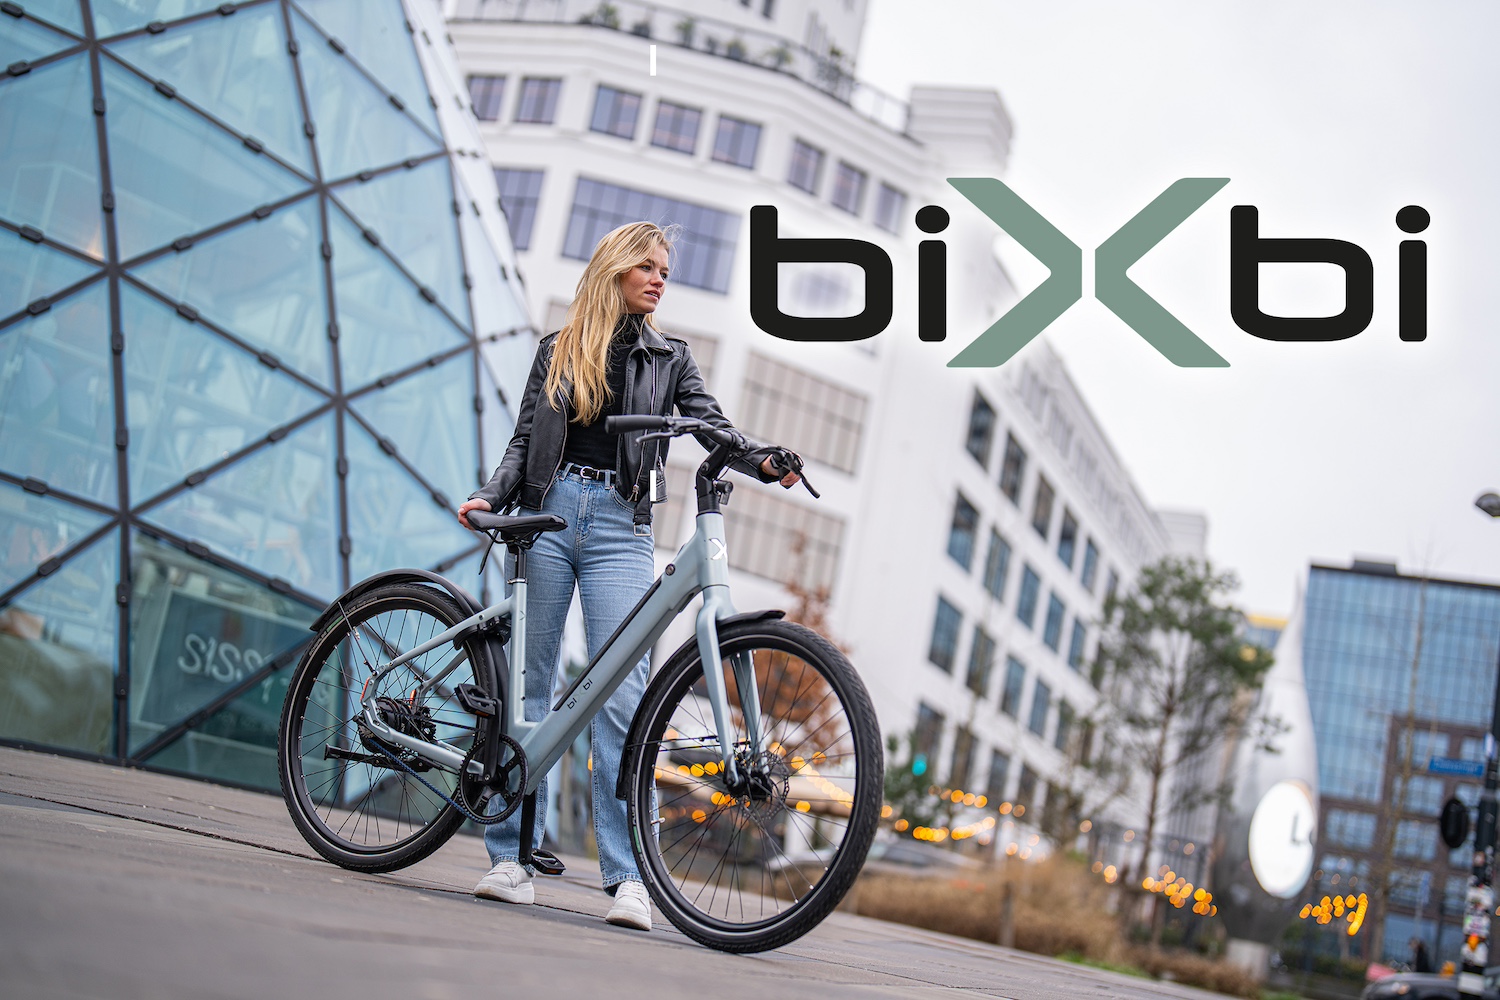 nieuwsfiets nieuws Bixbi bikkel bikes